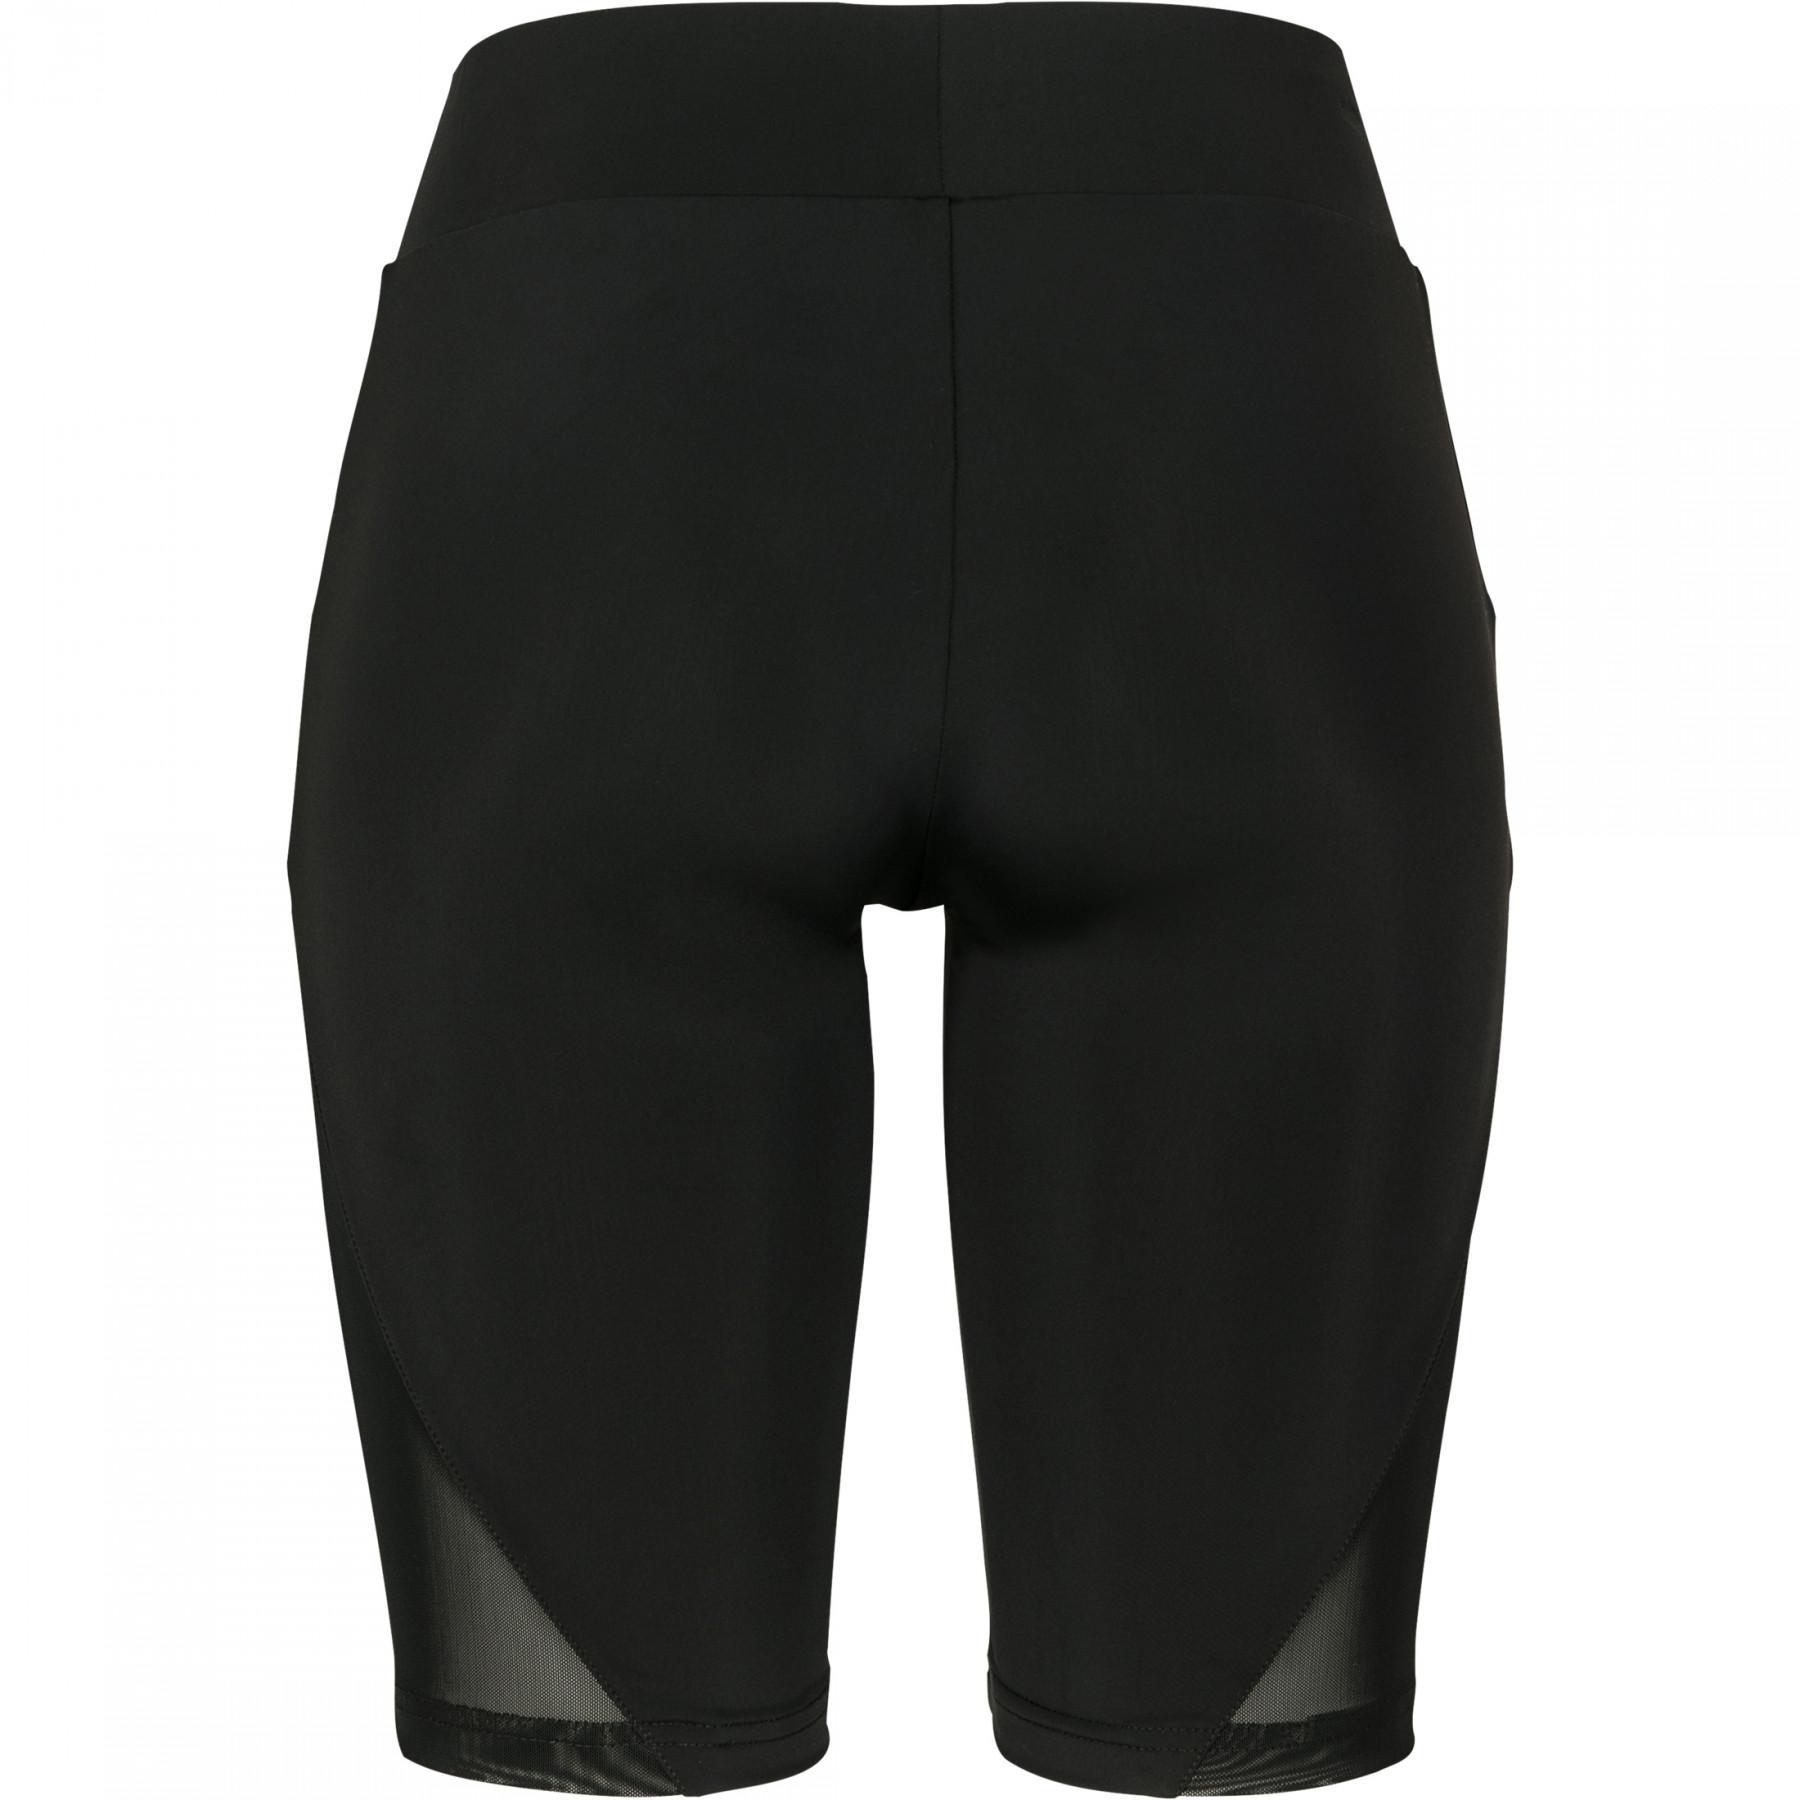 Women's Urban Classic mesh shorts